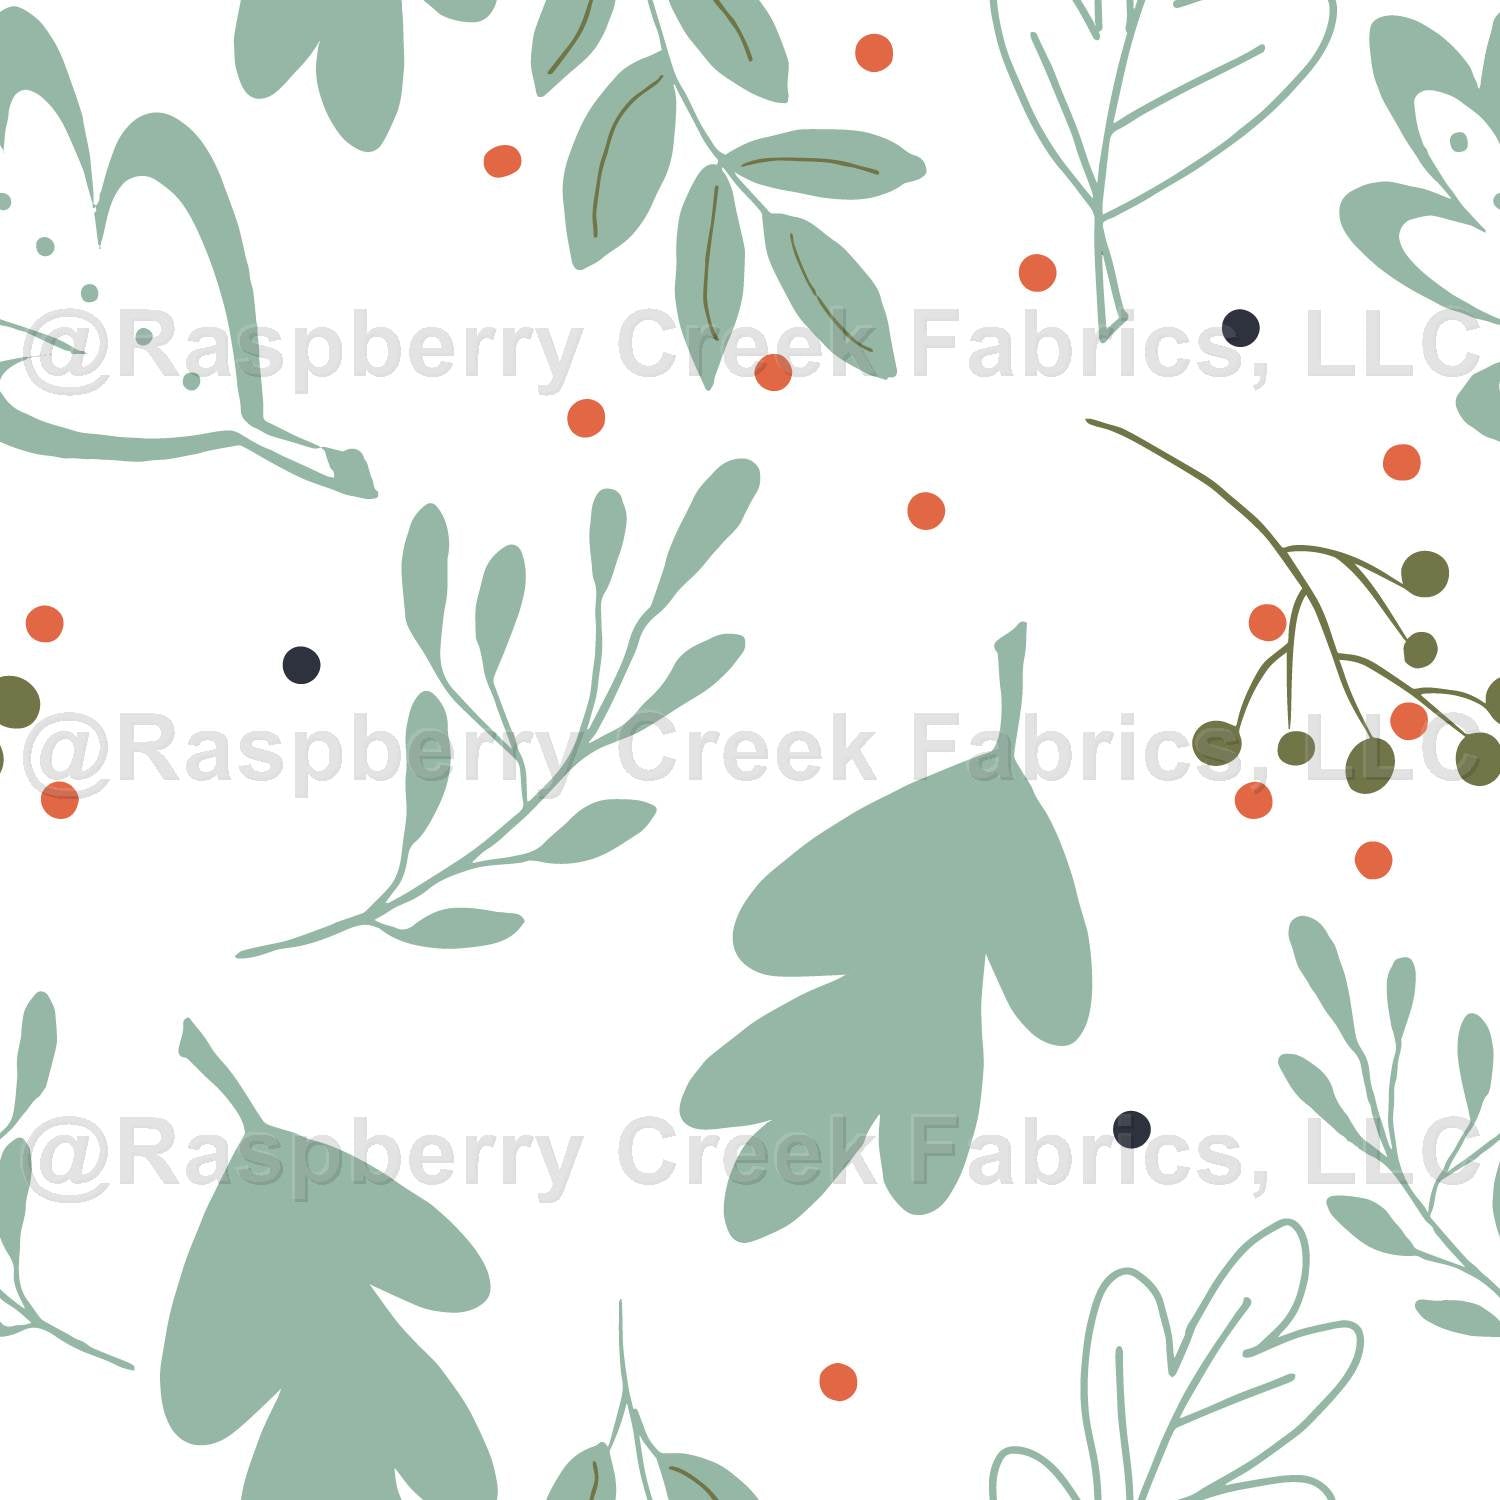 Winter Greenery and Berries Fabric, Raspberry Creek Fabrics